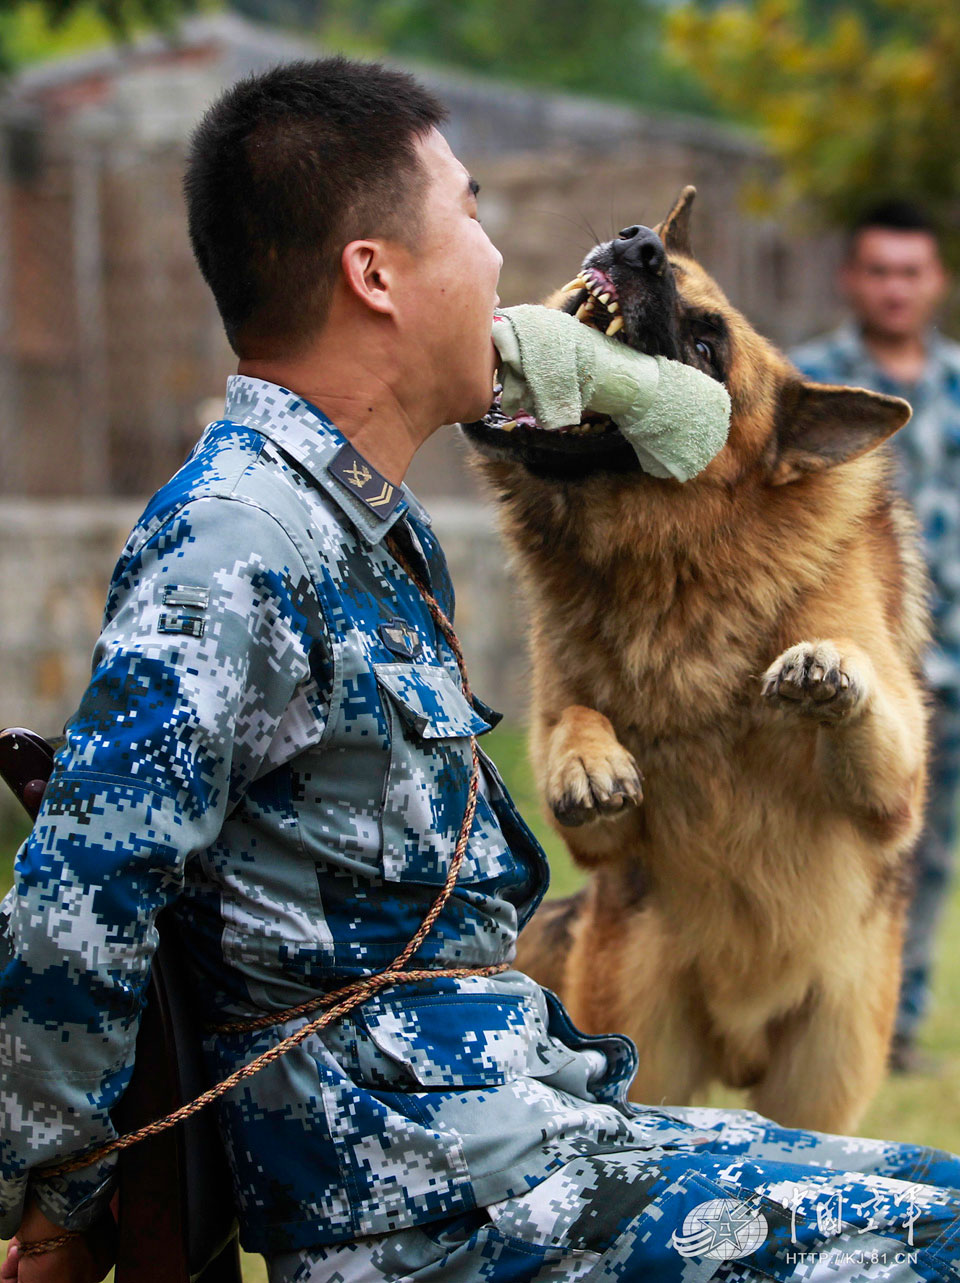 高清:空軍軍犬飛躍穿火圈 巧救被捆綁戰士【2】